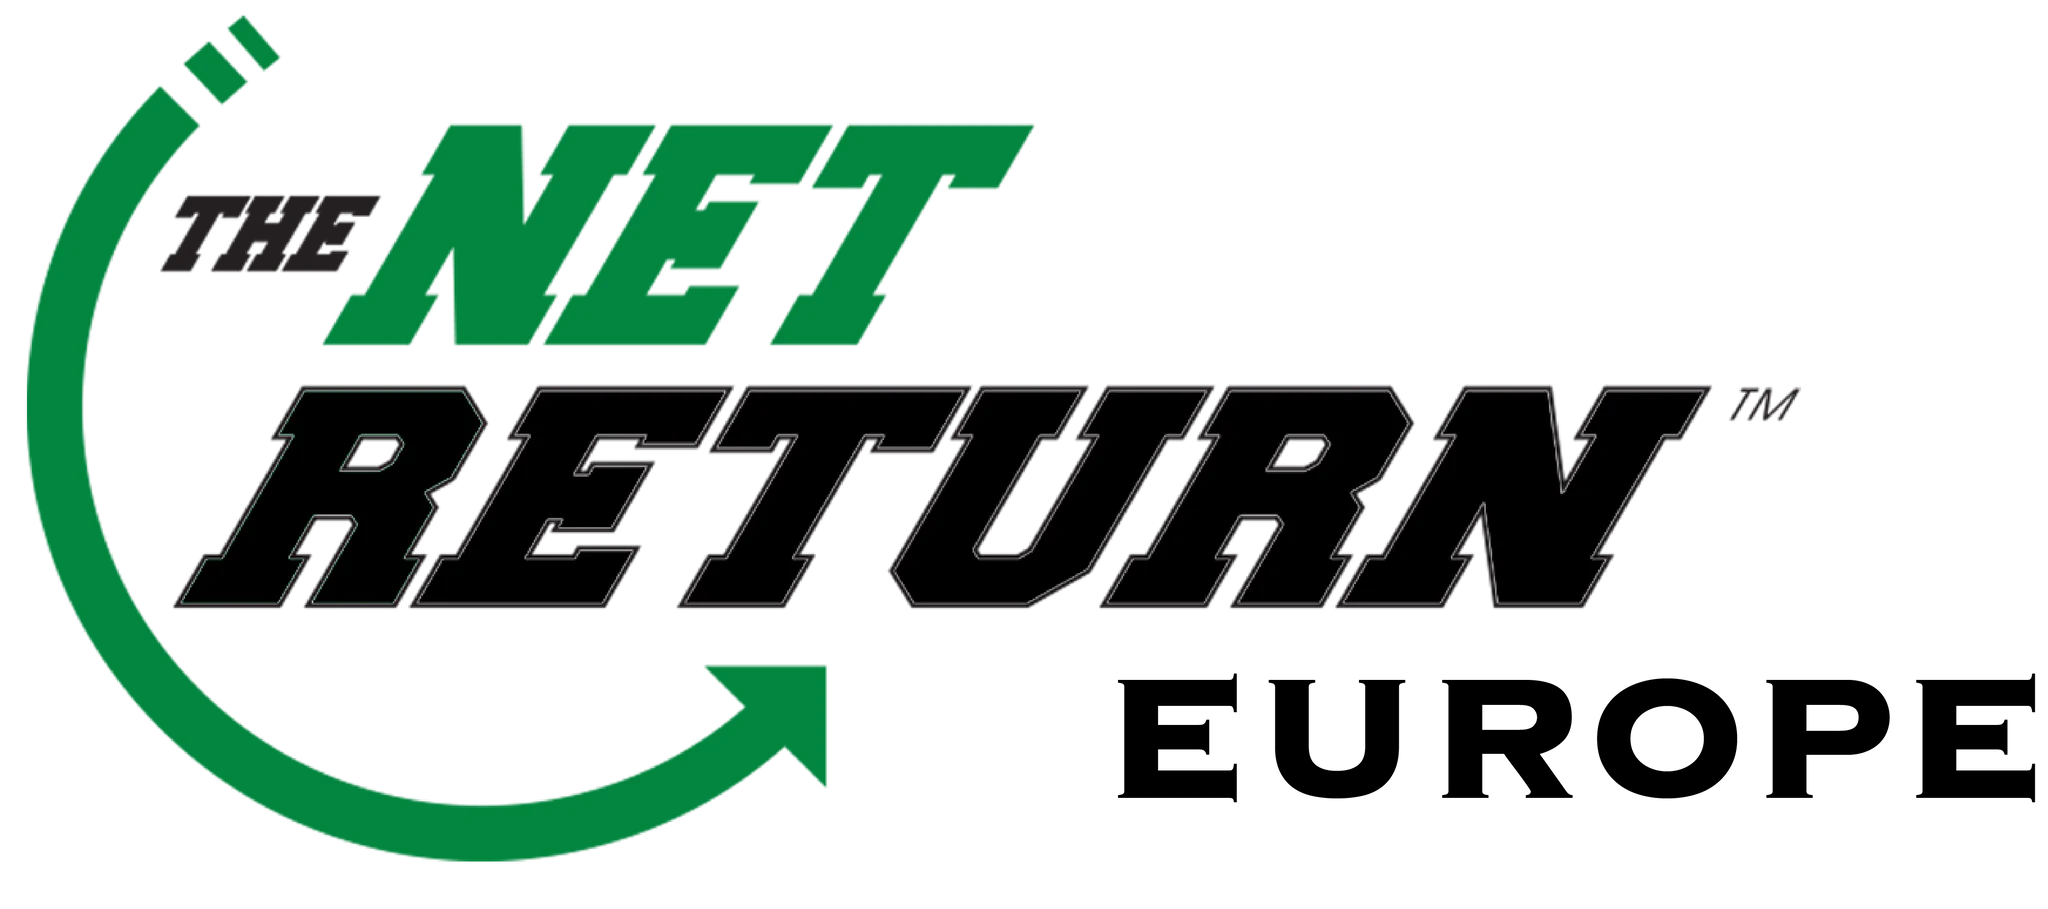 The Net Return Europe logo